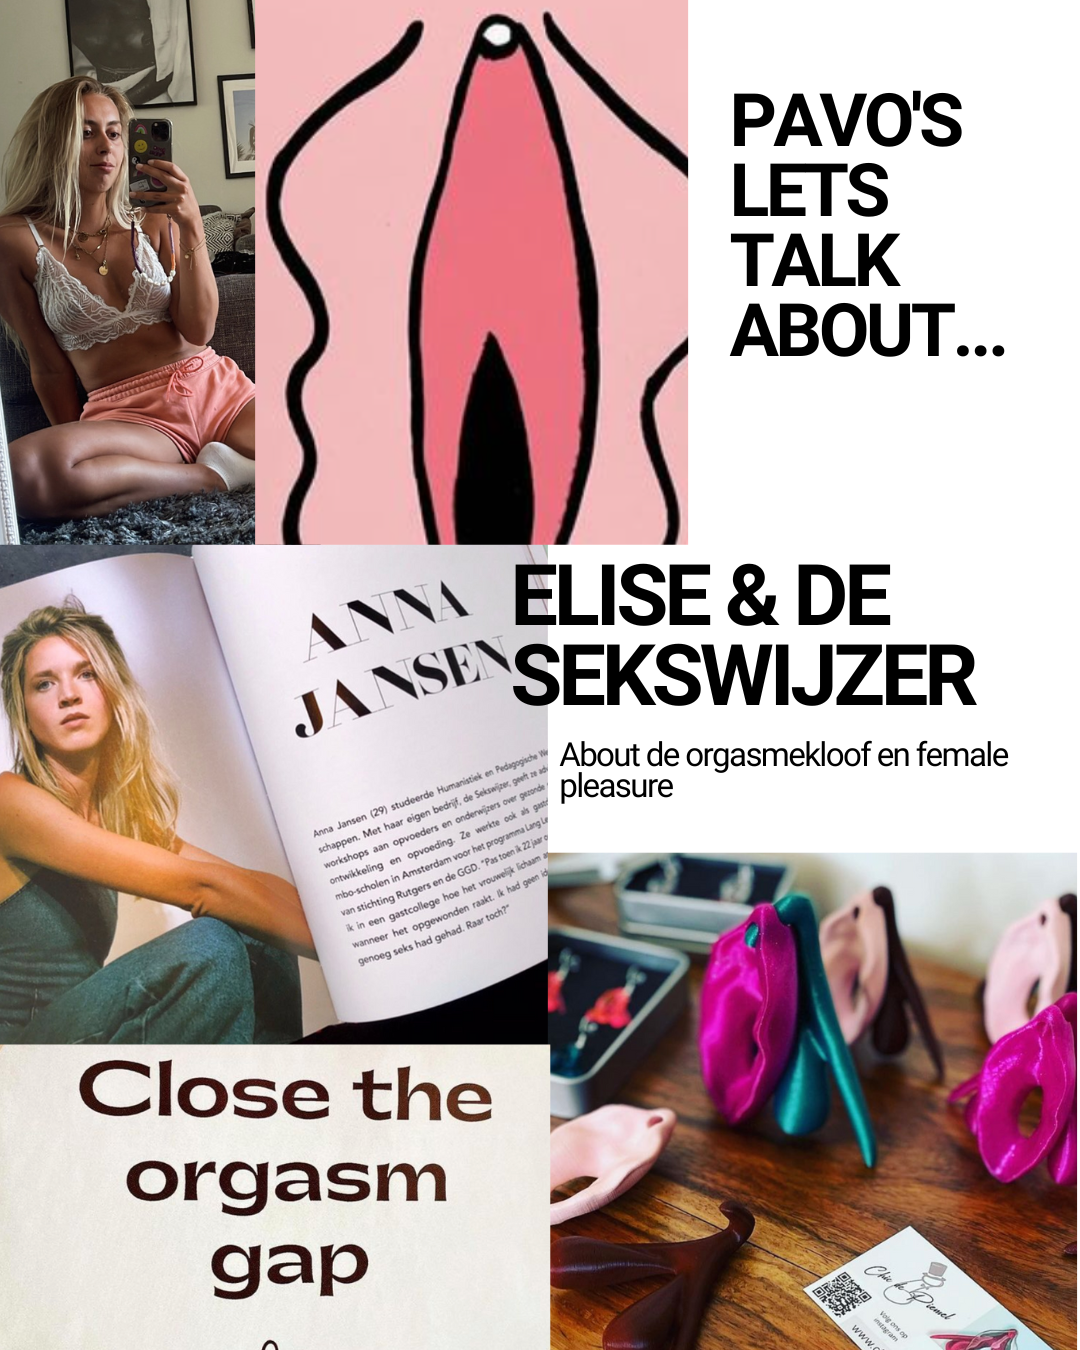 Let's Talk About: De sekswijzer